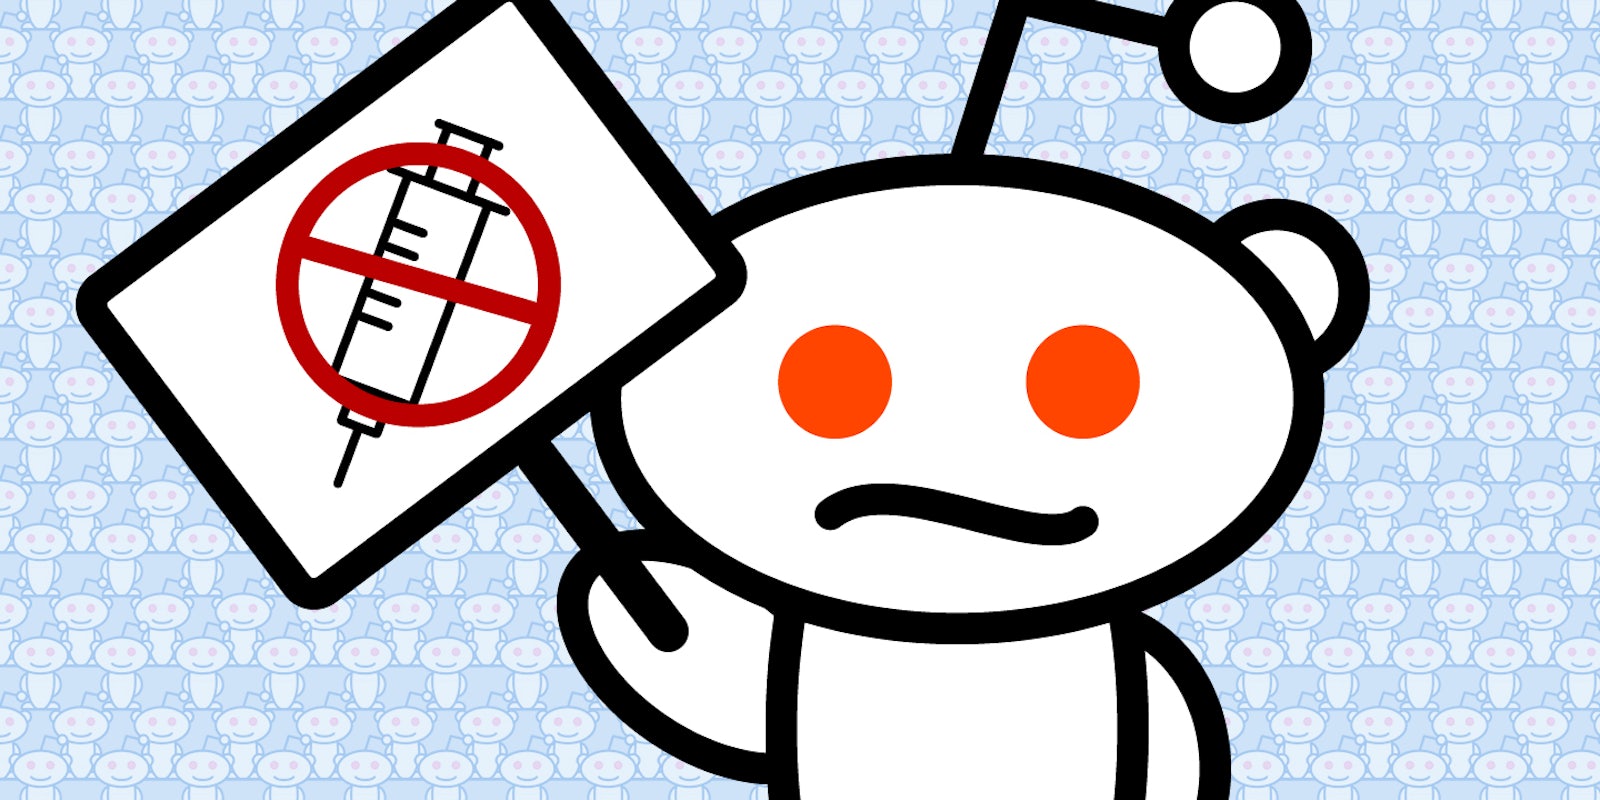 Reddit alien holding sign with 'no' symbol over syringe